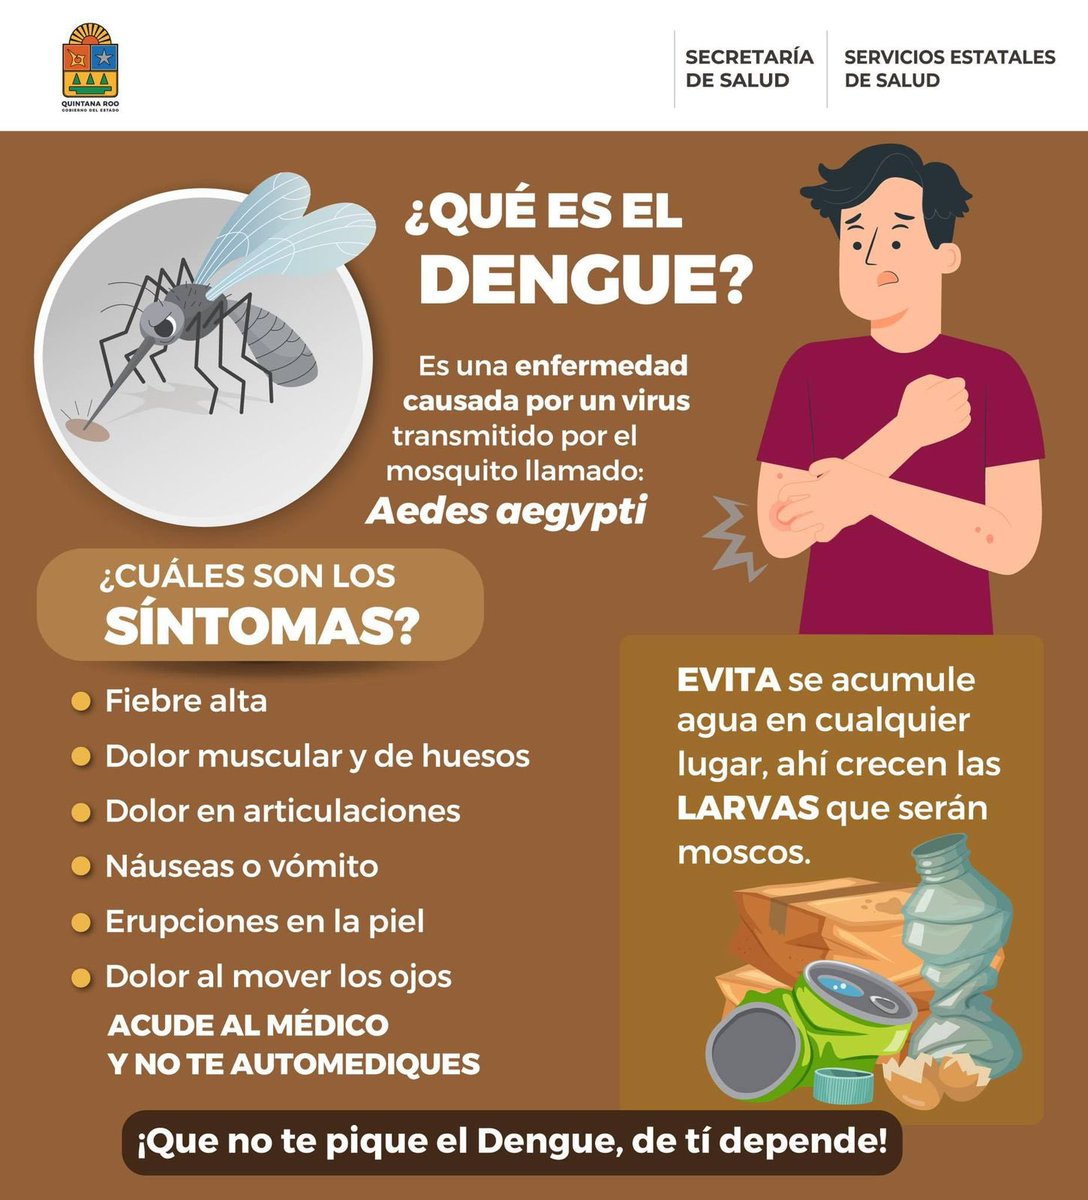 El dengue es una enfermedad transmitida por el mosquito aedes aegypti y juntos podemos prevenirla. Por ello es importante que conozcan los síntomas y sigan estas recomendaciones que emite la @SESA_QROO para evitar criaderos de mosquitos. 🦟 ¡Recuerda, la prevención es nuestra